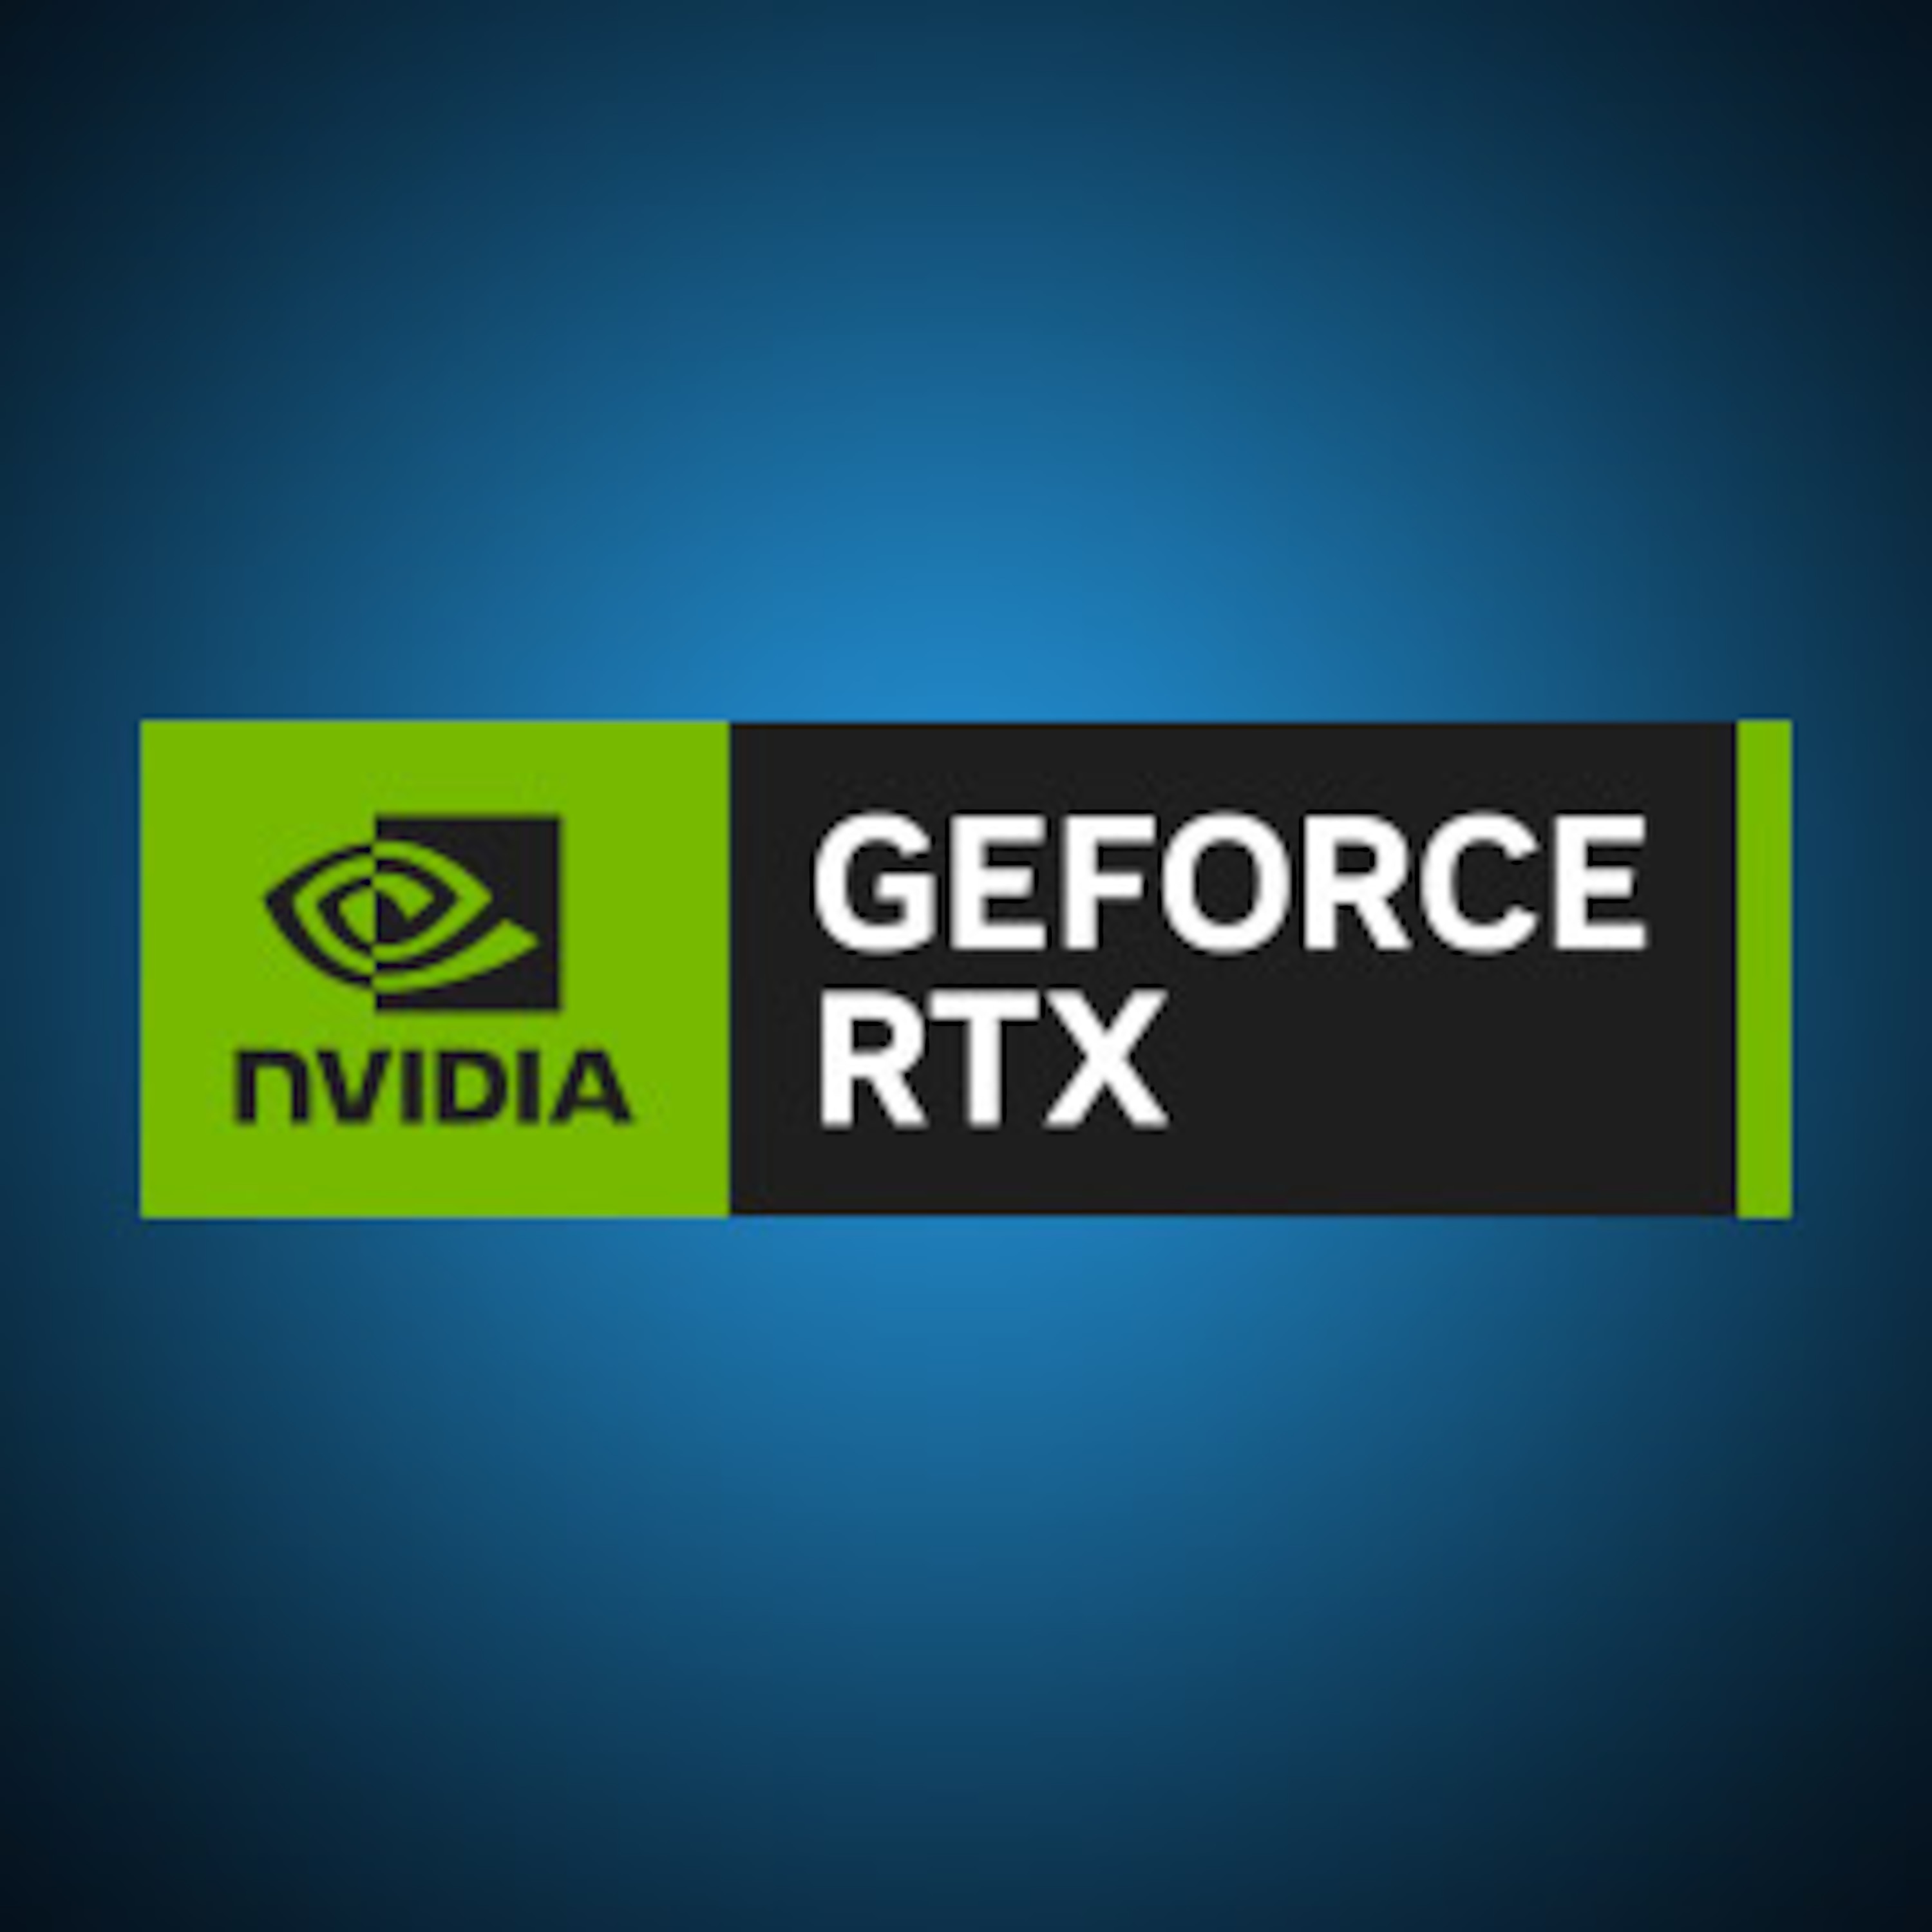 NVIDIA® GeForce® RTX 2070 SUPER™ mit 8 GB GDDR6 VRAM, 1 x HDMI 2.0 und 3 x DisplayPort 1.4